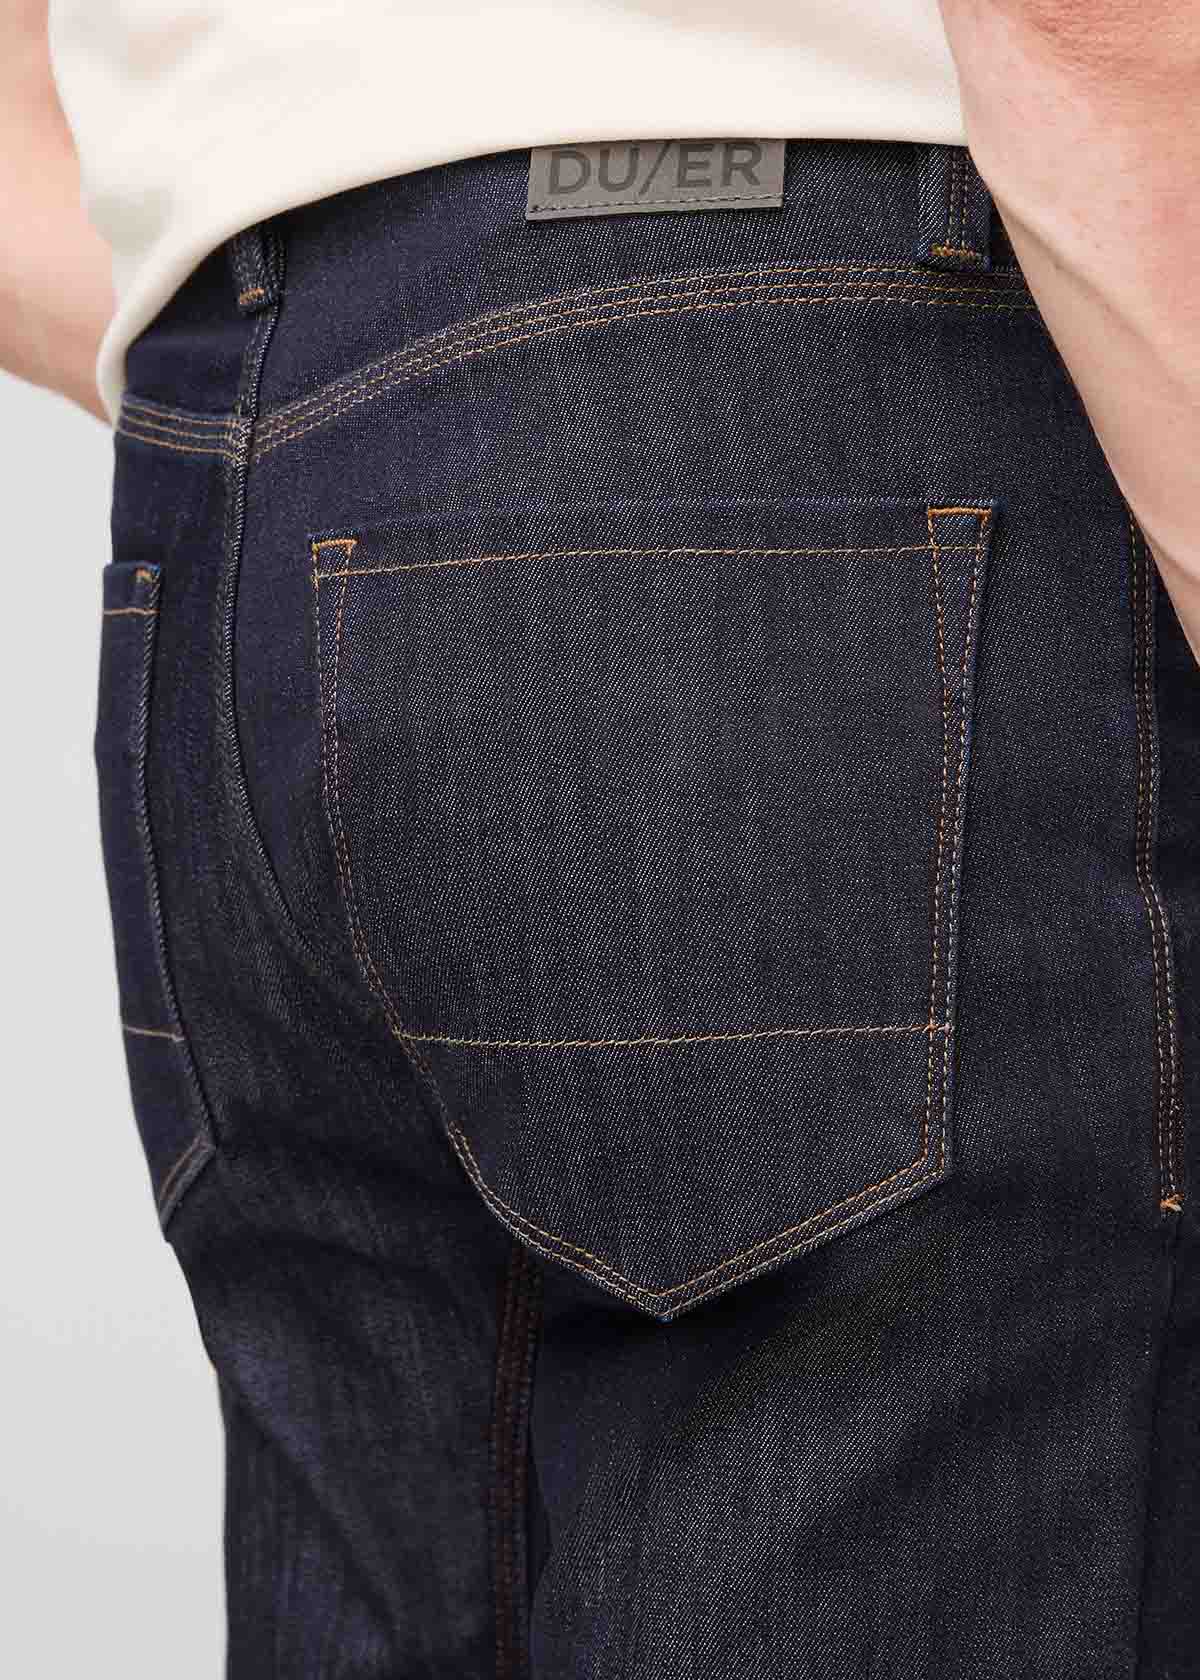 BOSS - Slim-fit jeans in lightweight blue denim